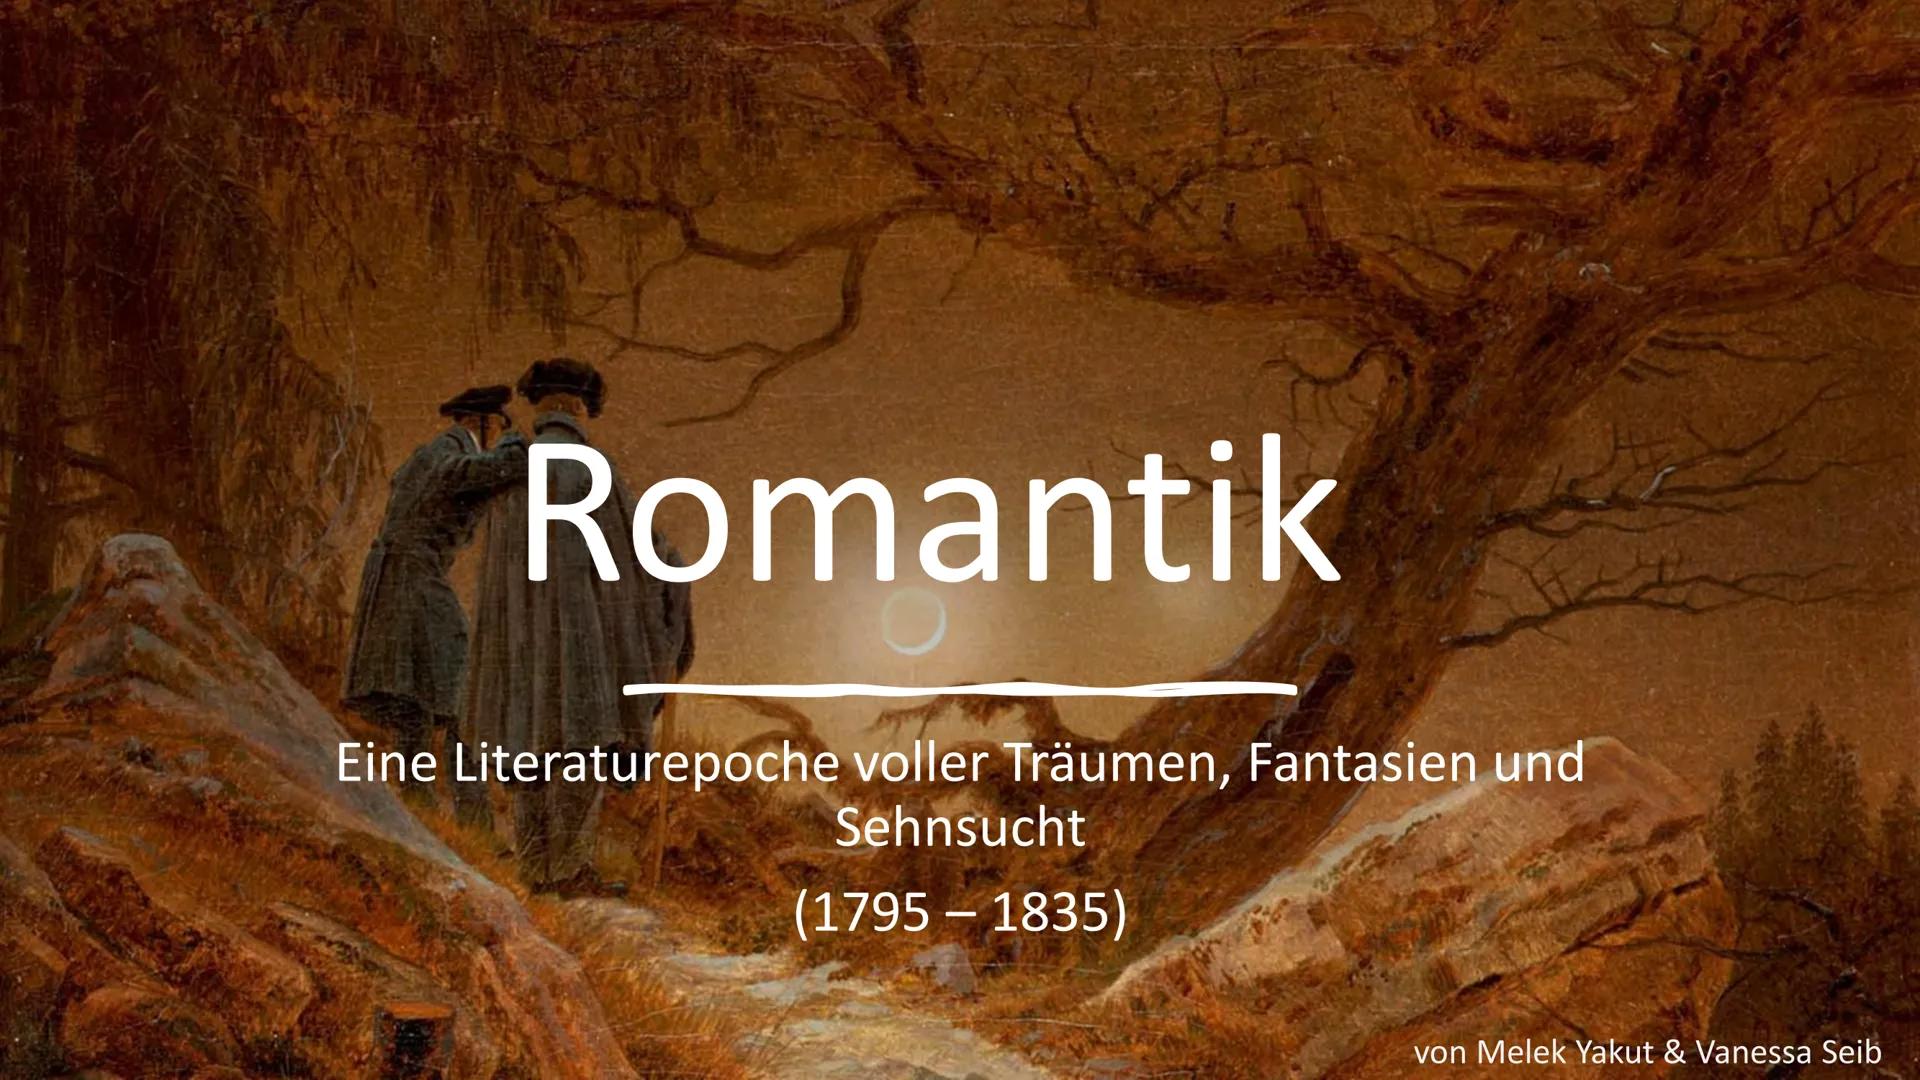 Romantik
Eine Literaturepoche voller Träumen, Fantasien und
Sehnsucht
(1795-1835)
von Melek Yakut & Vanessa Seib Gliederung
Begrifferläuteru